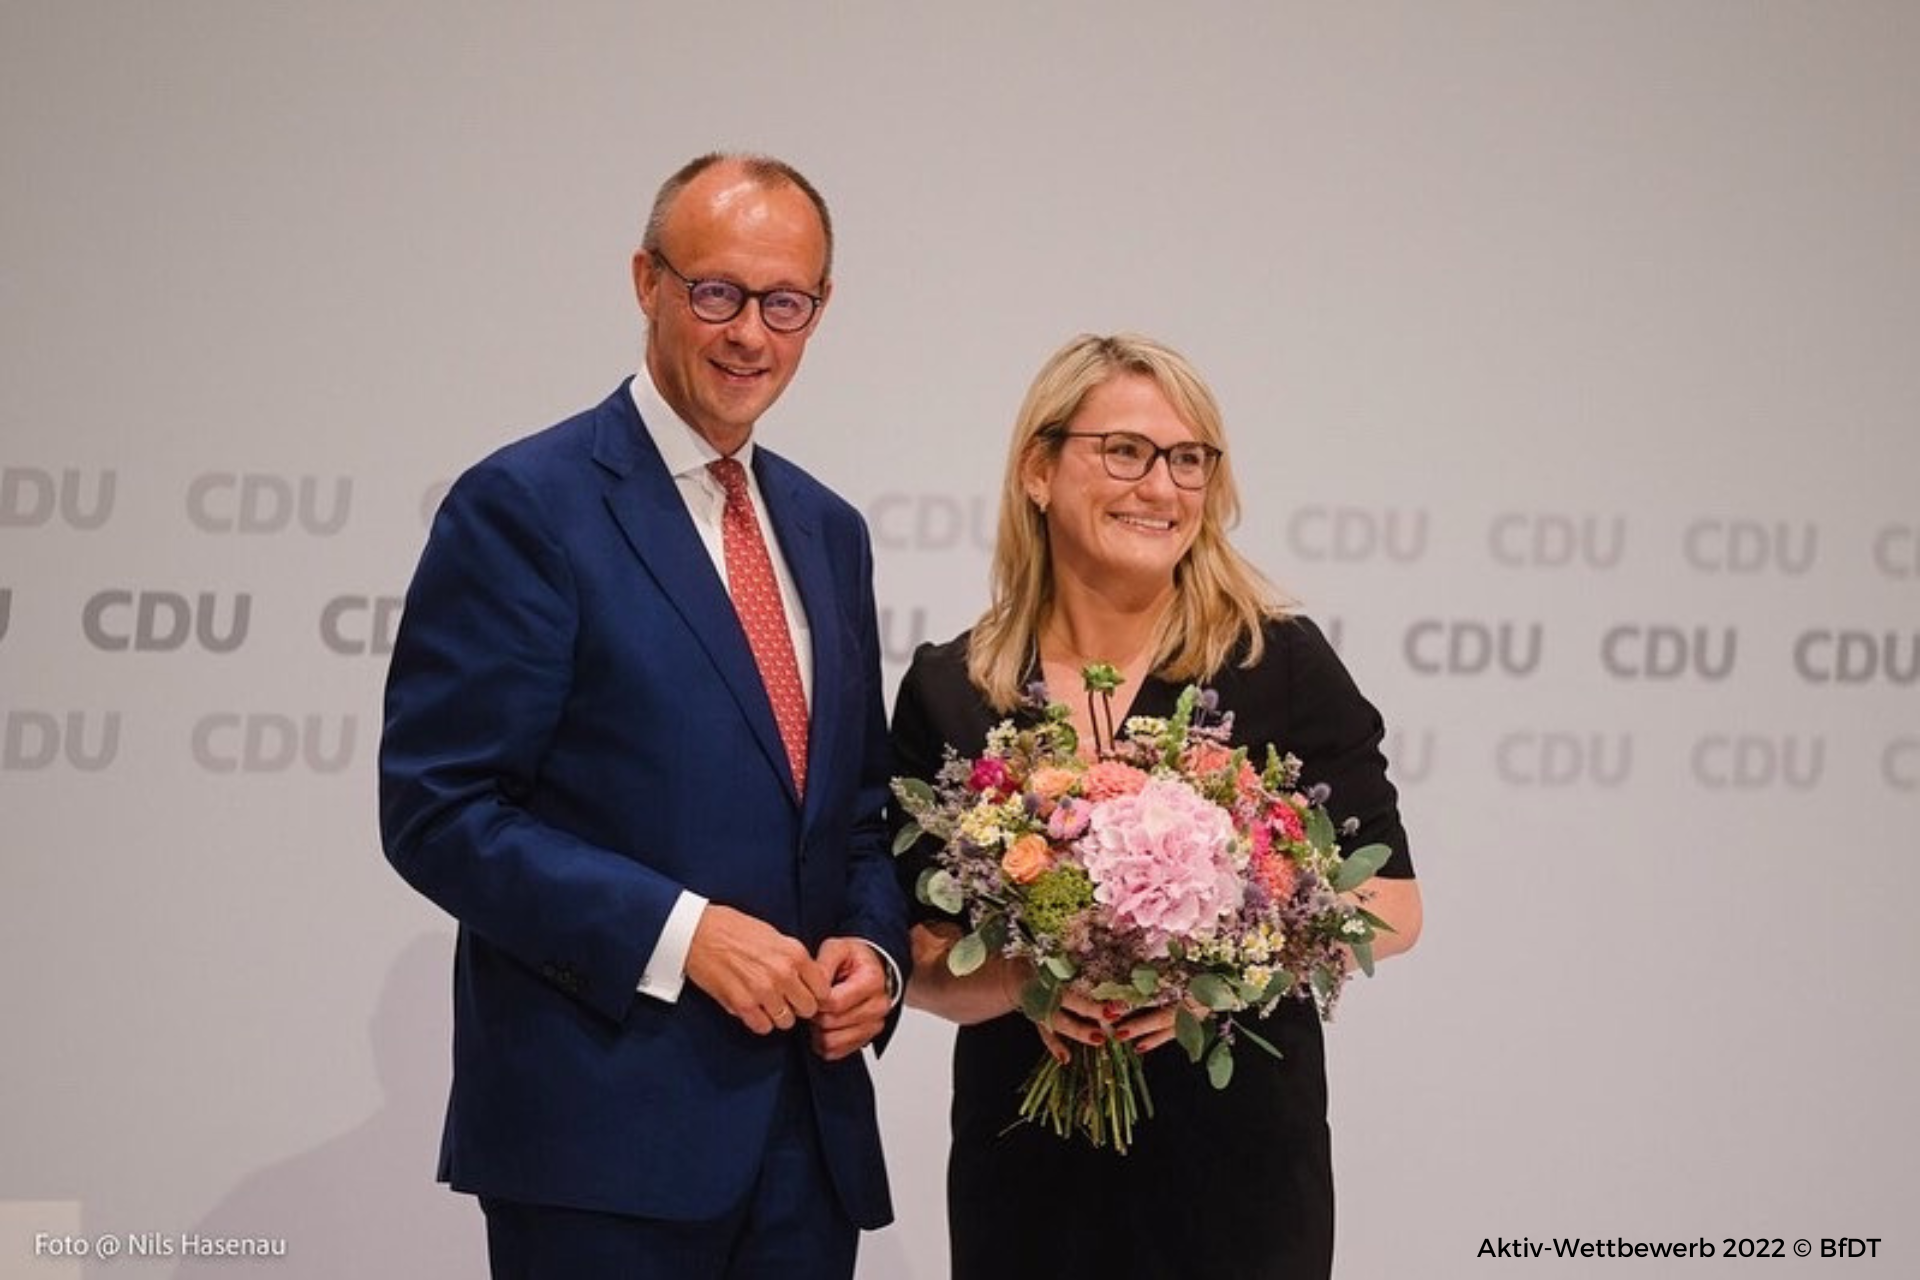 Christina Stumpp zur stellvertretenden Generalsekretärin der CDU Deutschlands gewählt!